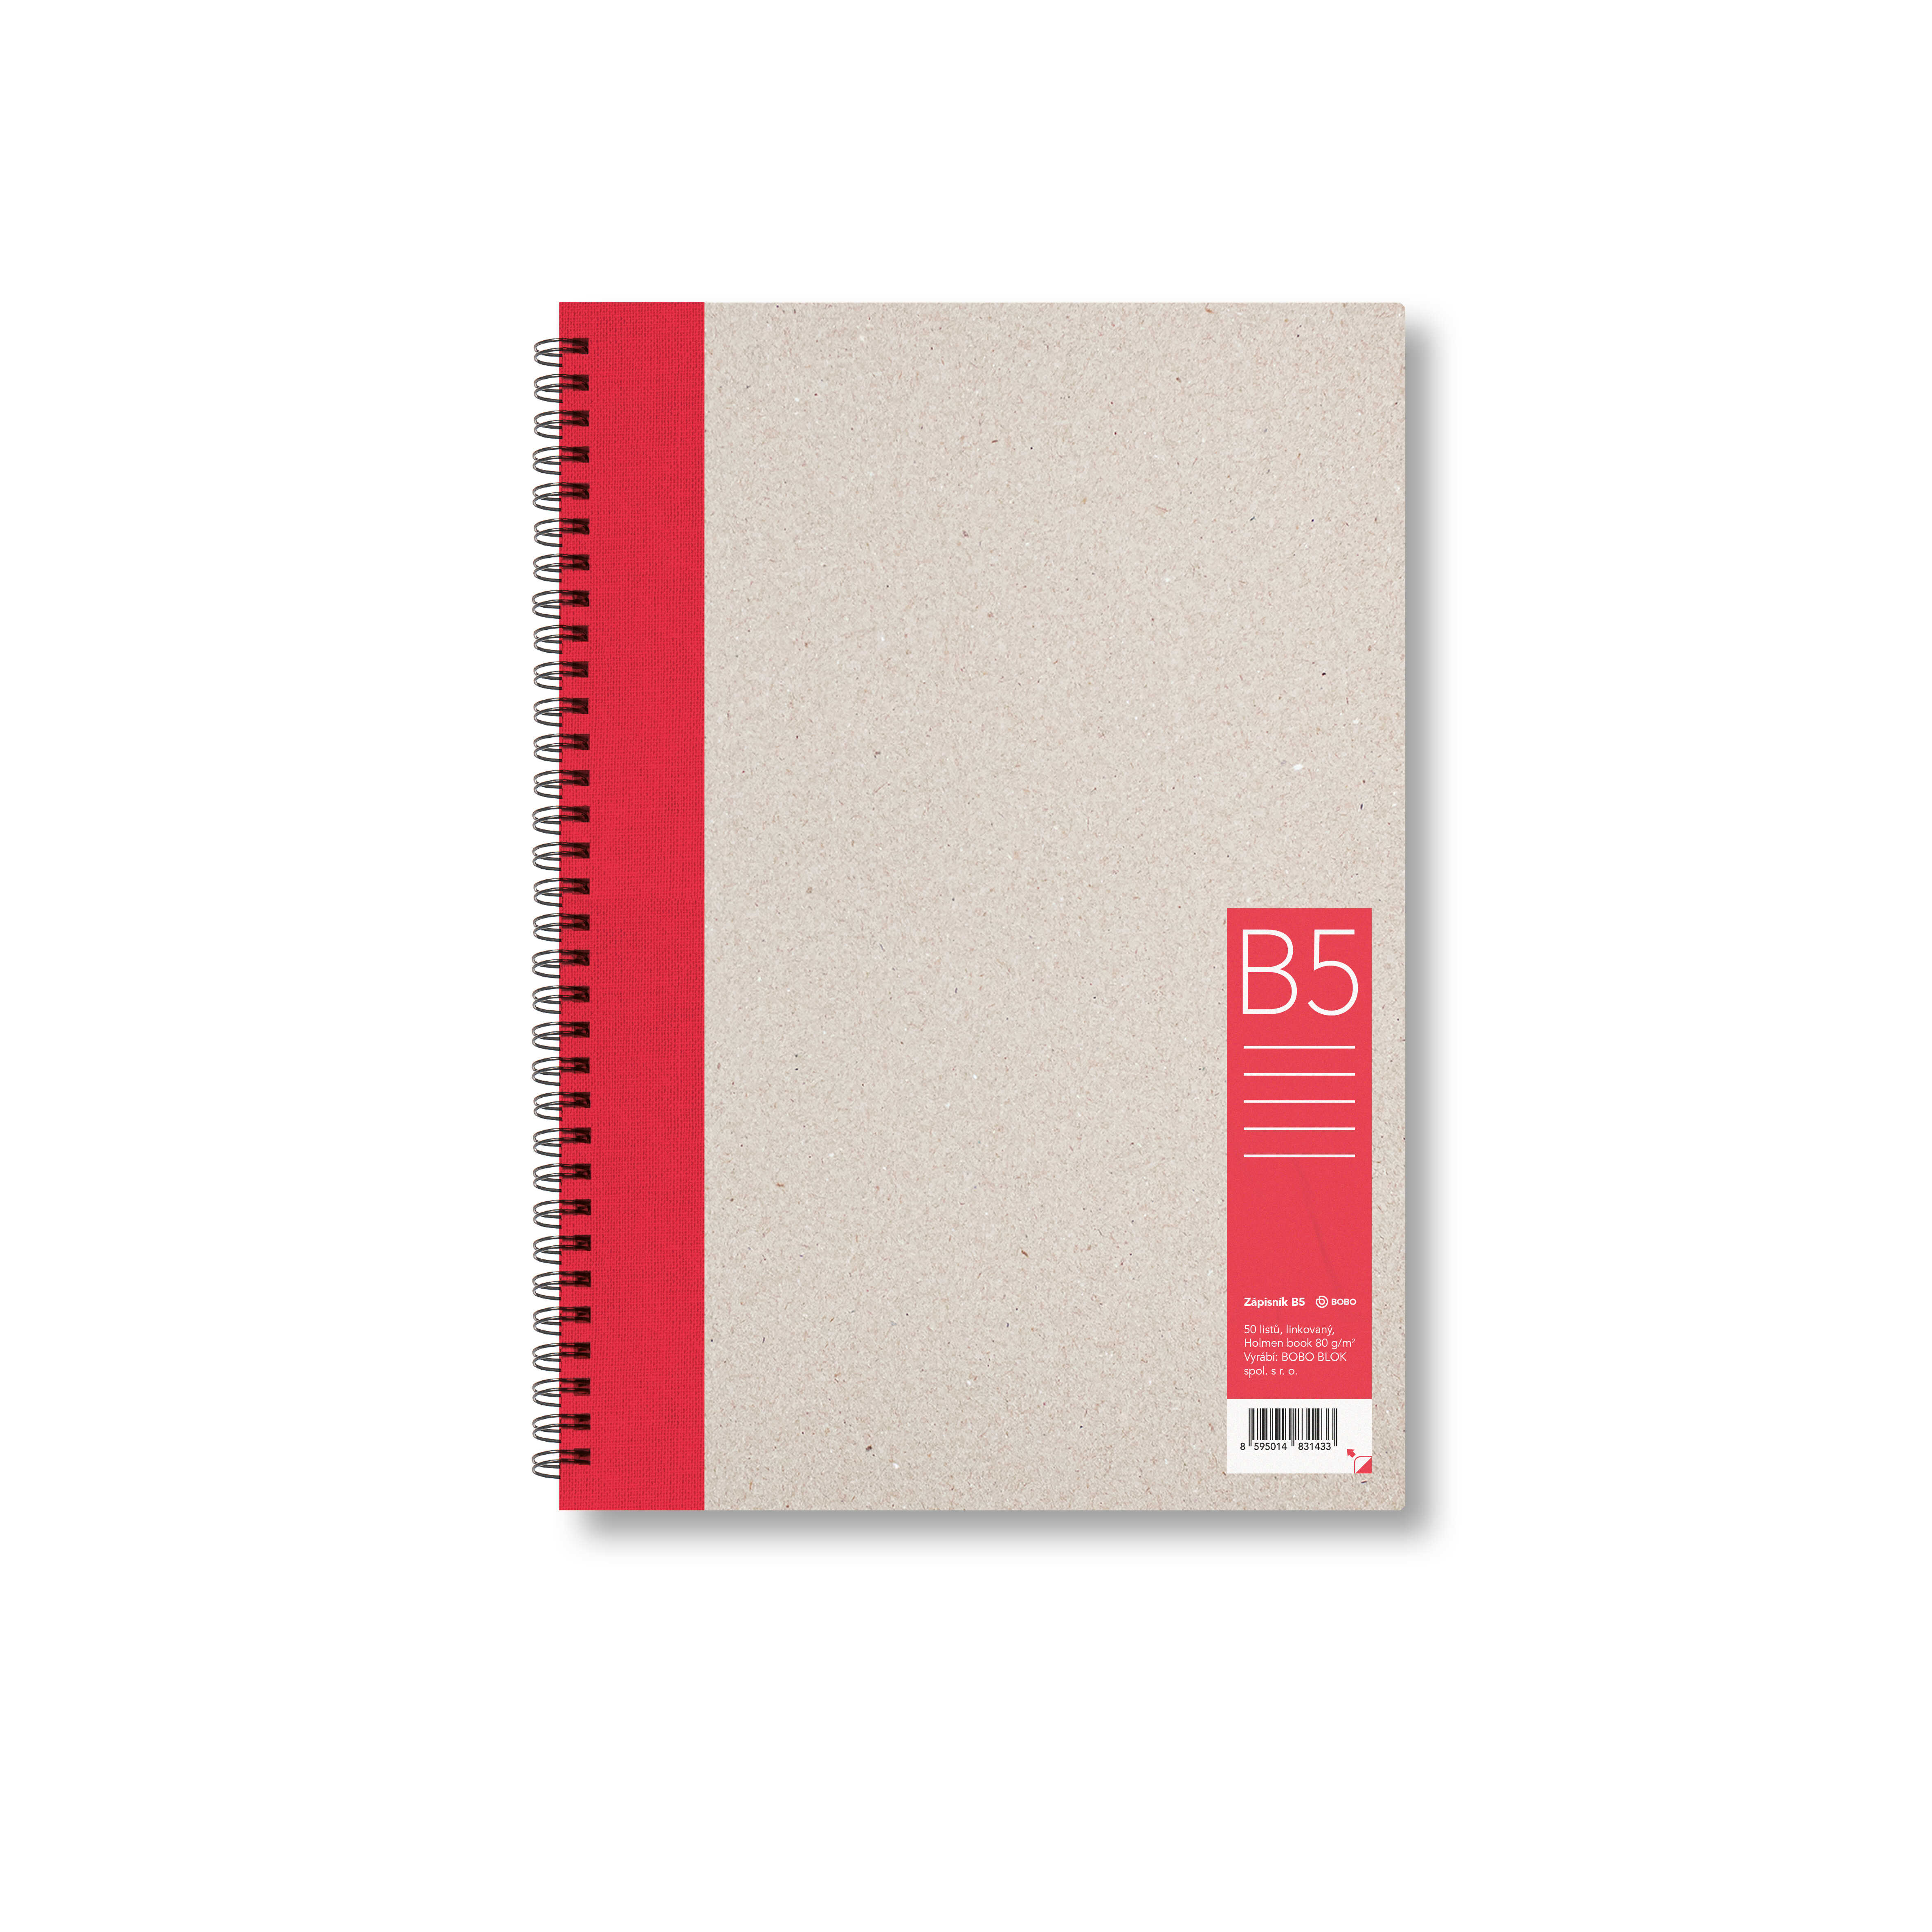 Zápisník Bobo B5, linkovaný, červený